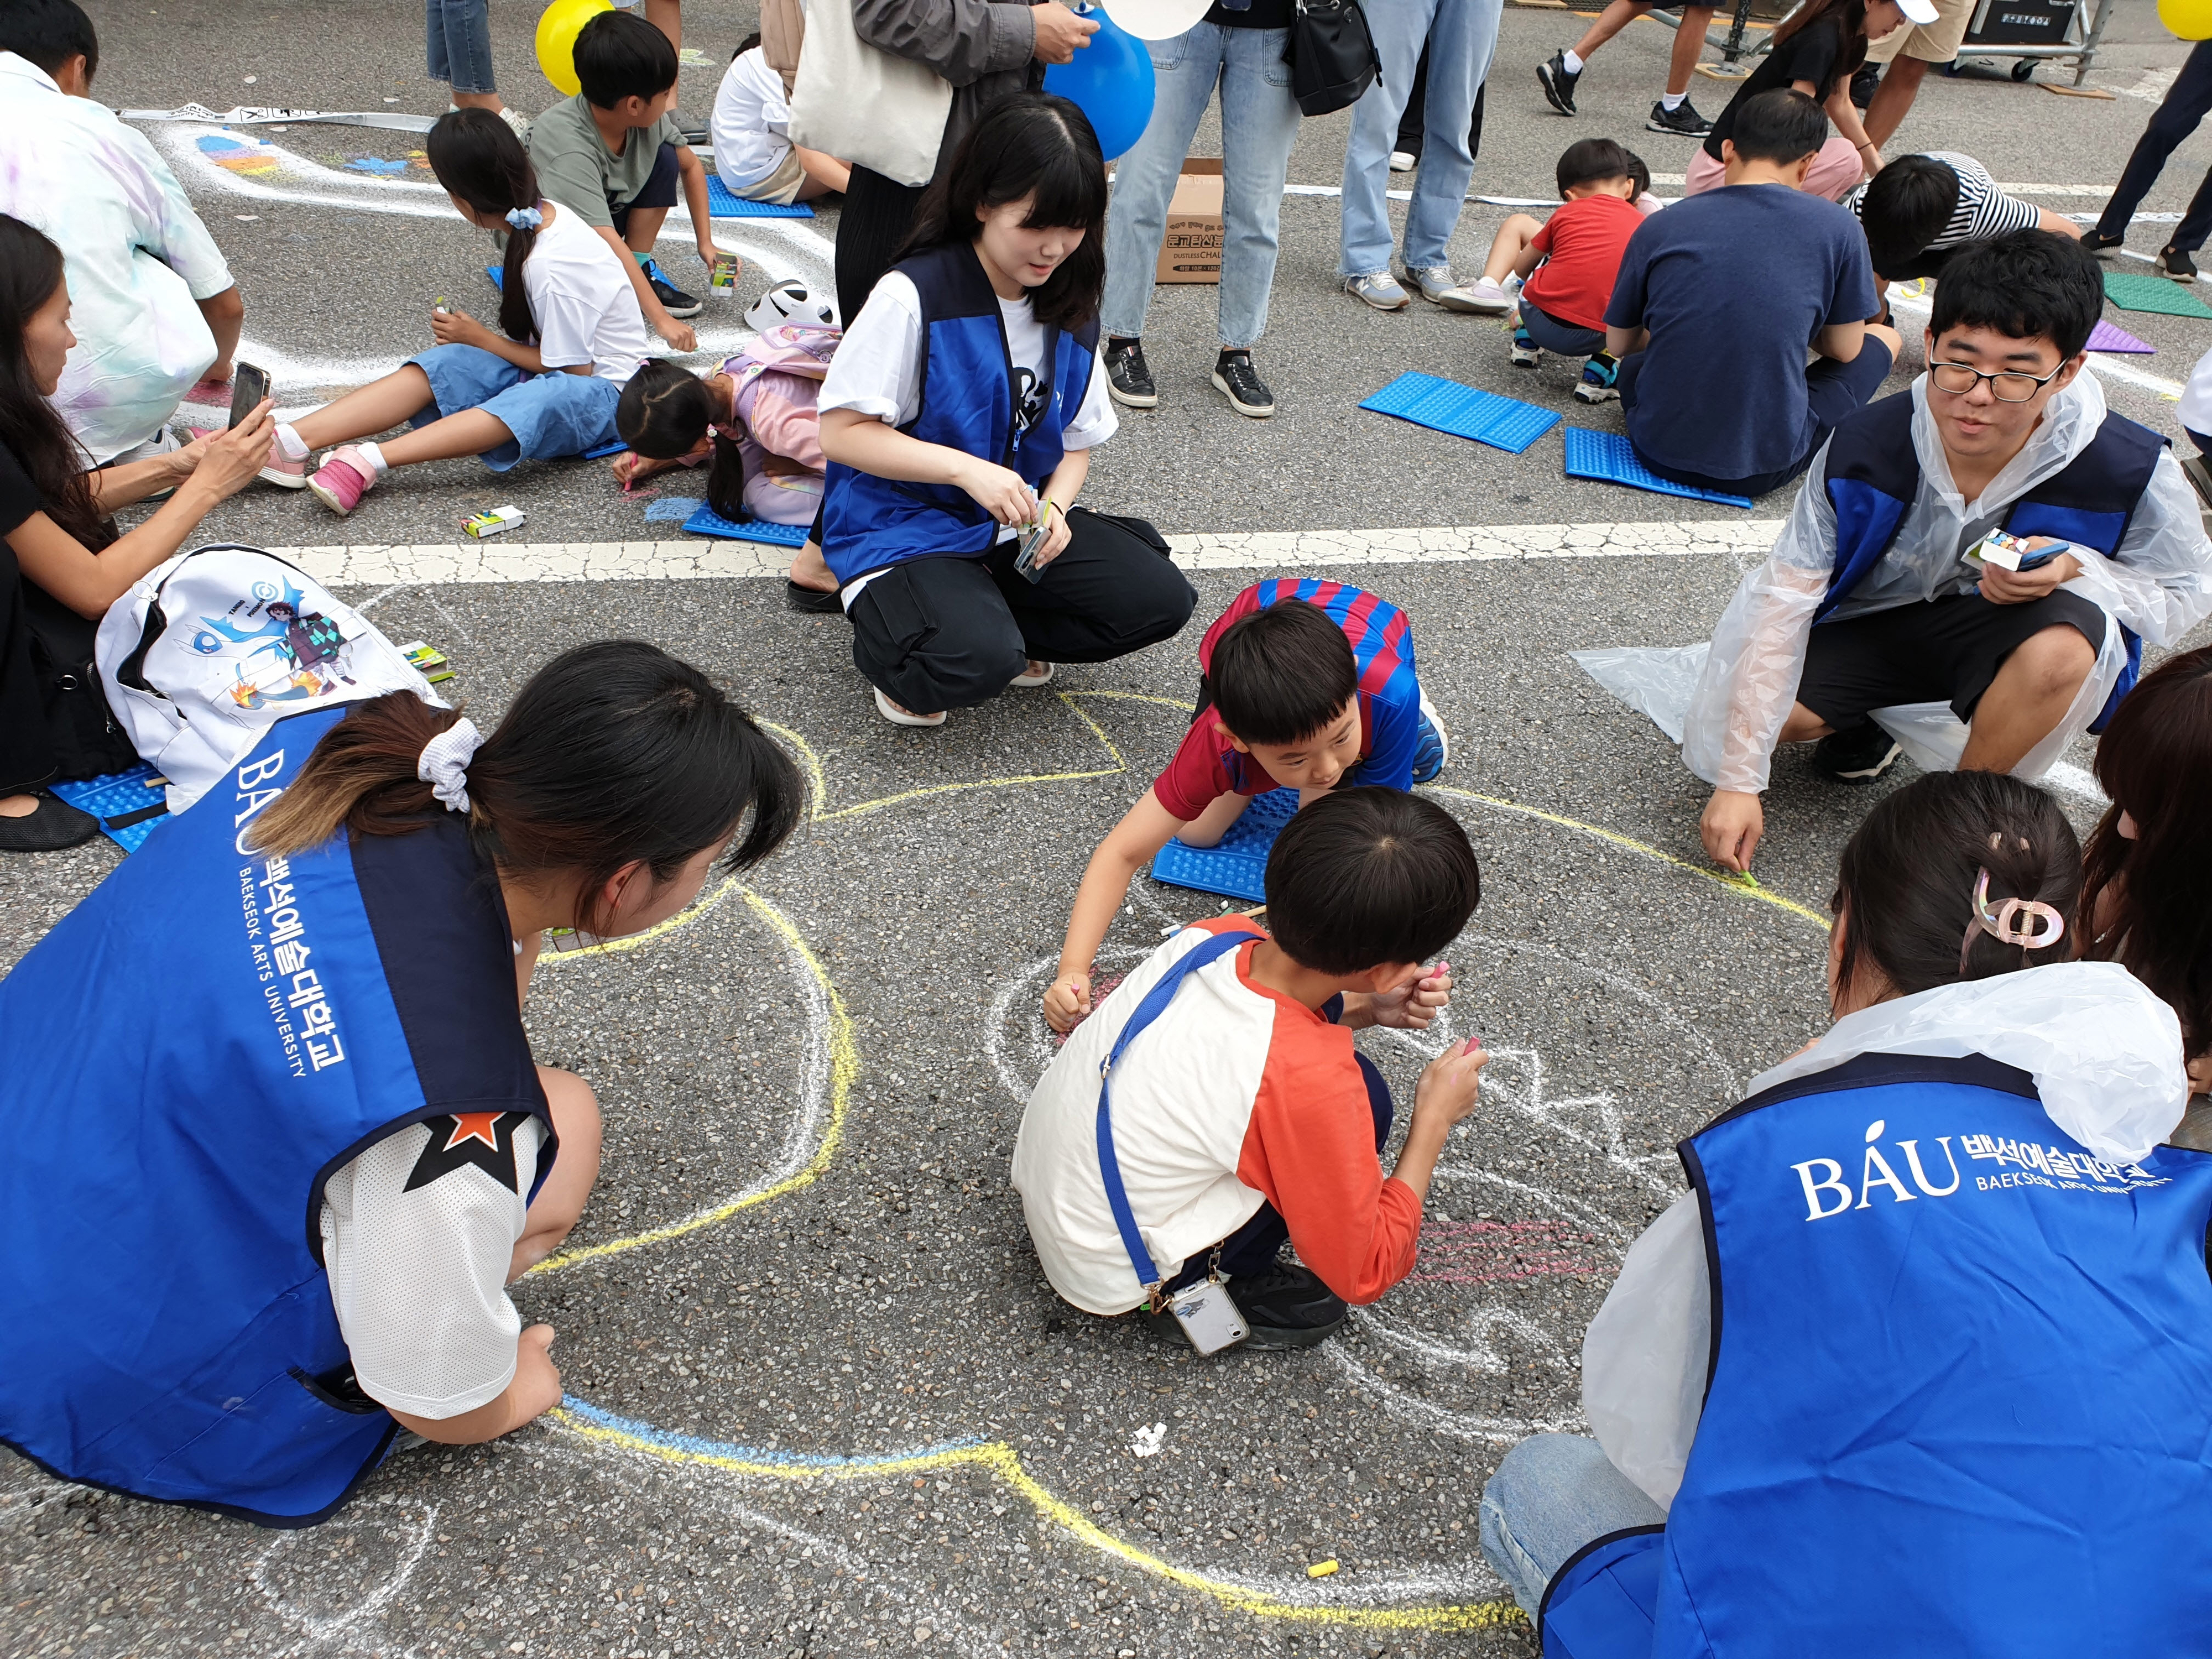 서리풀페스티벌 ‘지상최대 스케치북’ 대규모 거리 드로잉 행사에 참여한 백석예대 디자인미술학부 학생들이 어린이들과 함께 그림을 그리고 있다. 백석예대 제공